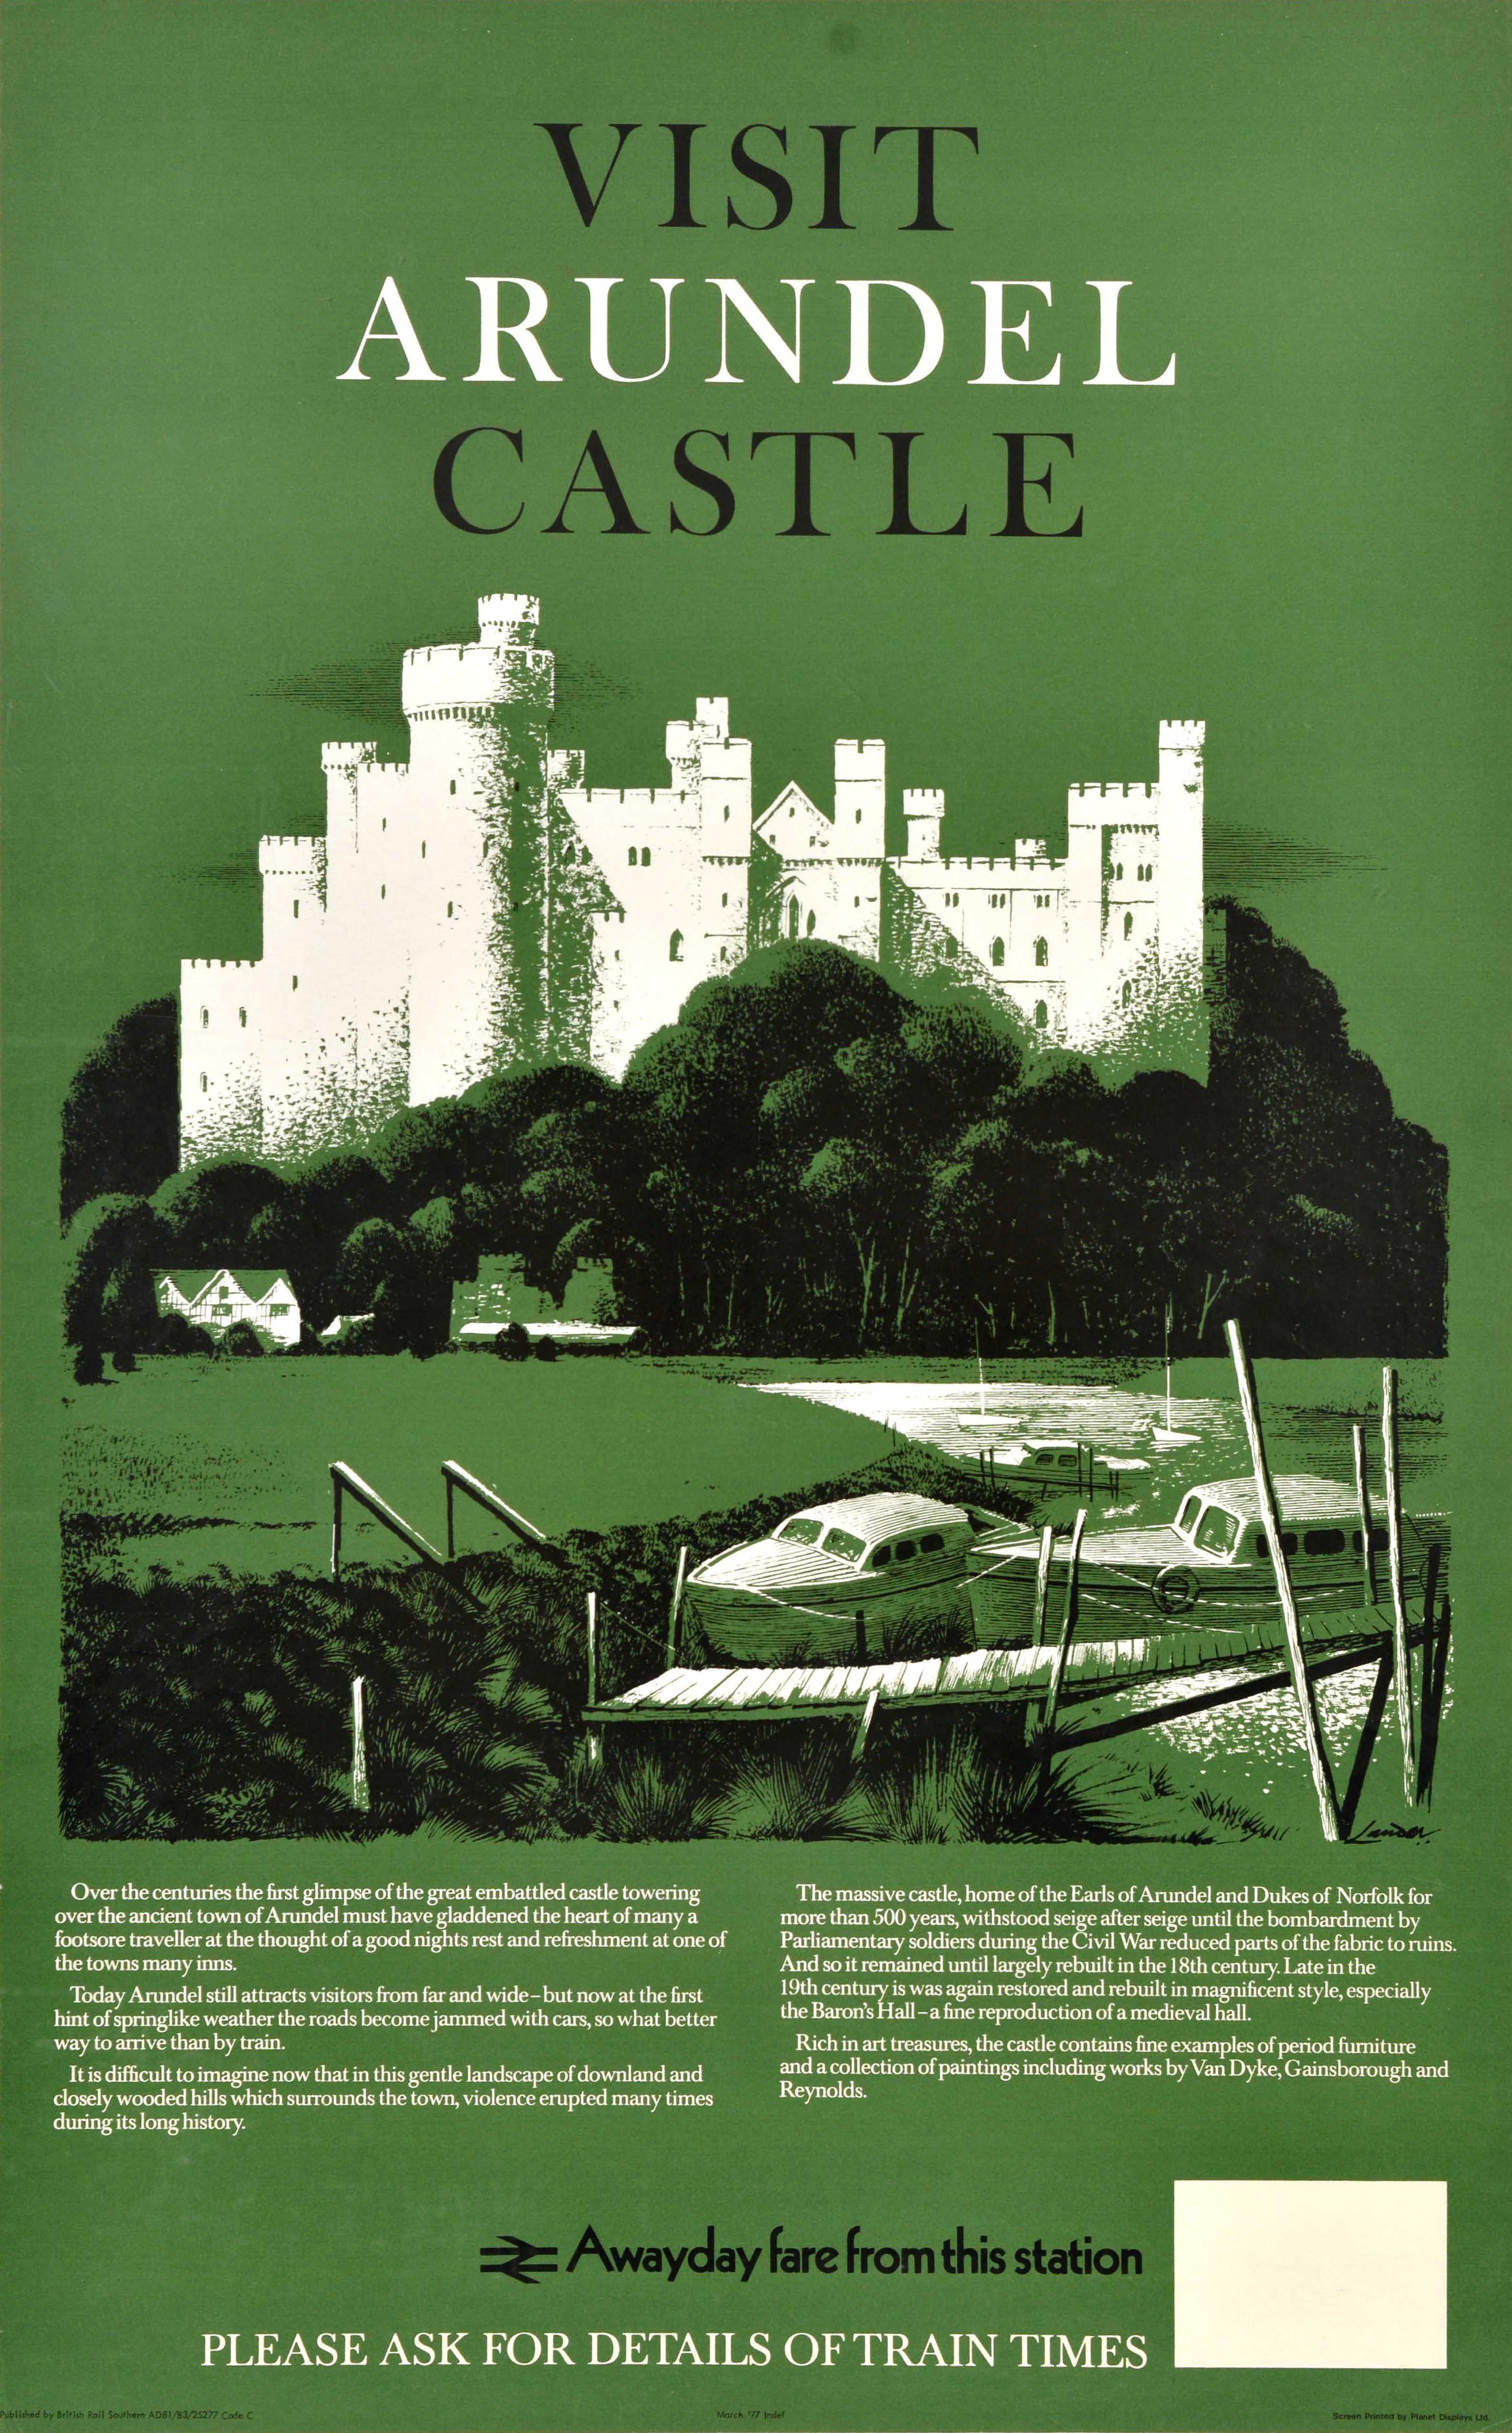 Affiche originale de voyage en train - Visit Arundel Castle - réalisée par le célèbre artiste commercial et créateur d'affiches Reginald Montague Lander (1913-1980) représentant le château historique d'Arundel, datant du XIe siècle et situé dans le